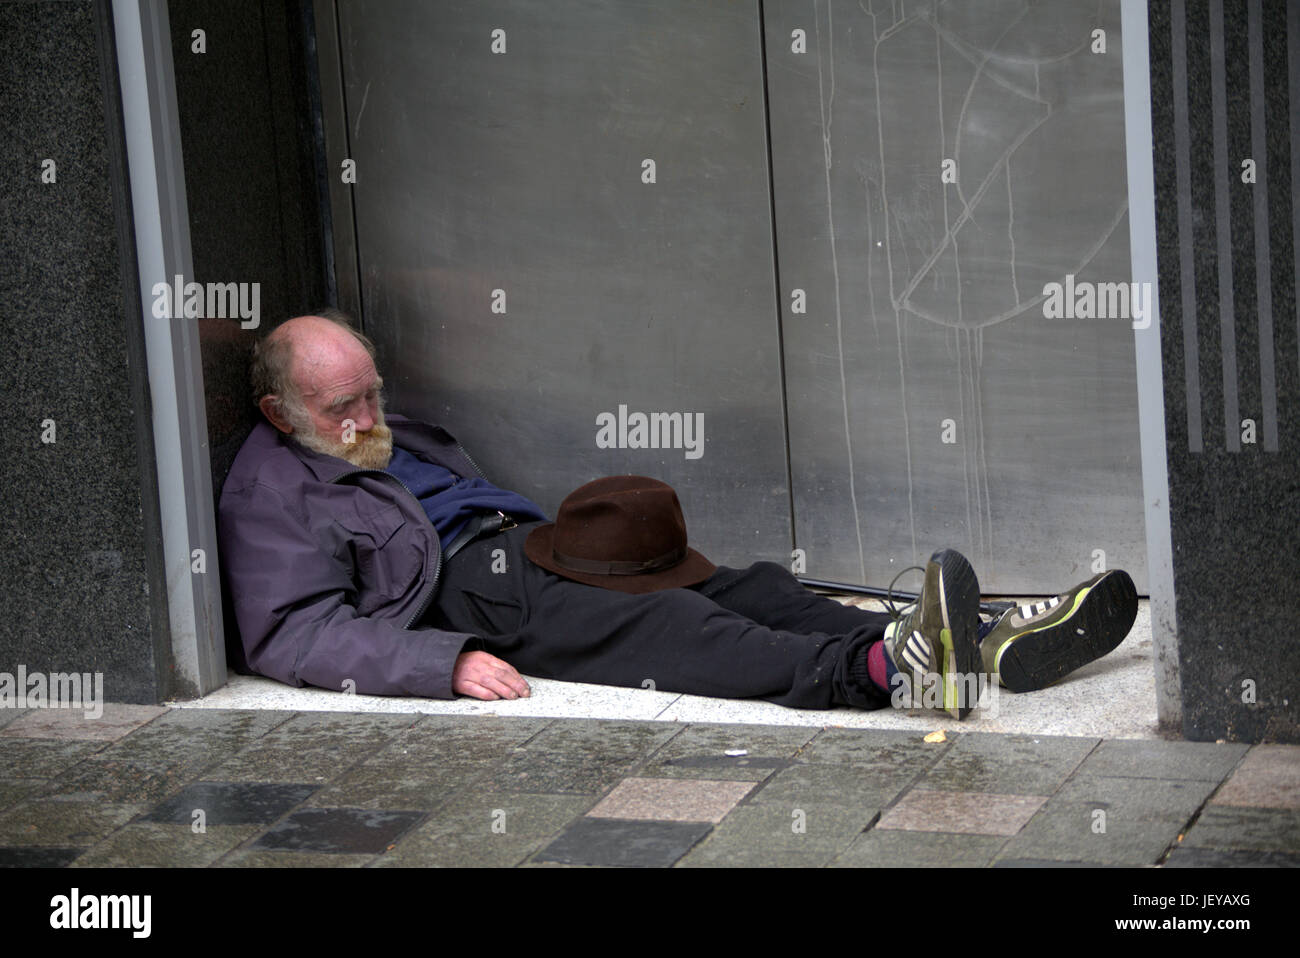 Sans-abri mendicité chômeur ancien senior citizen dao couché dans une porte avec hat inappropriée Banque D'Images